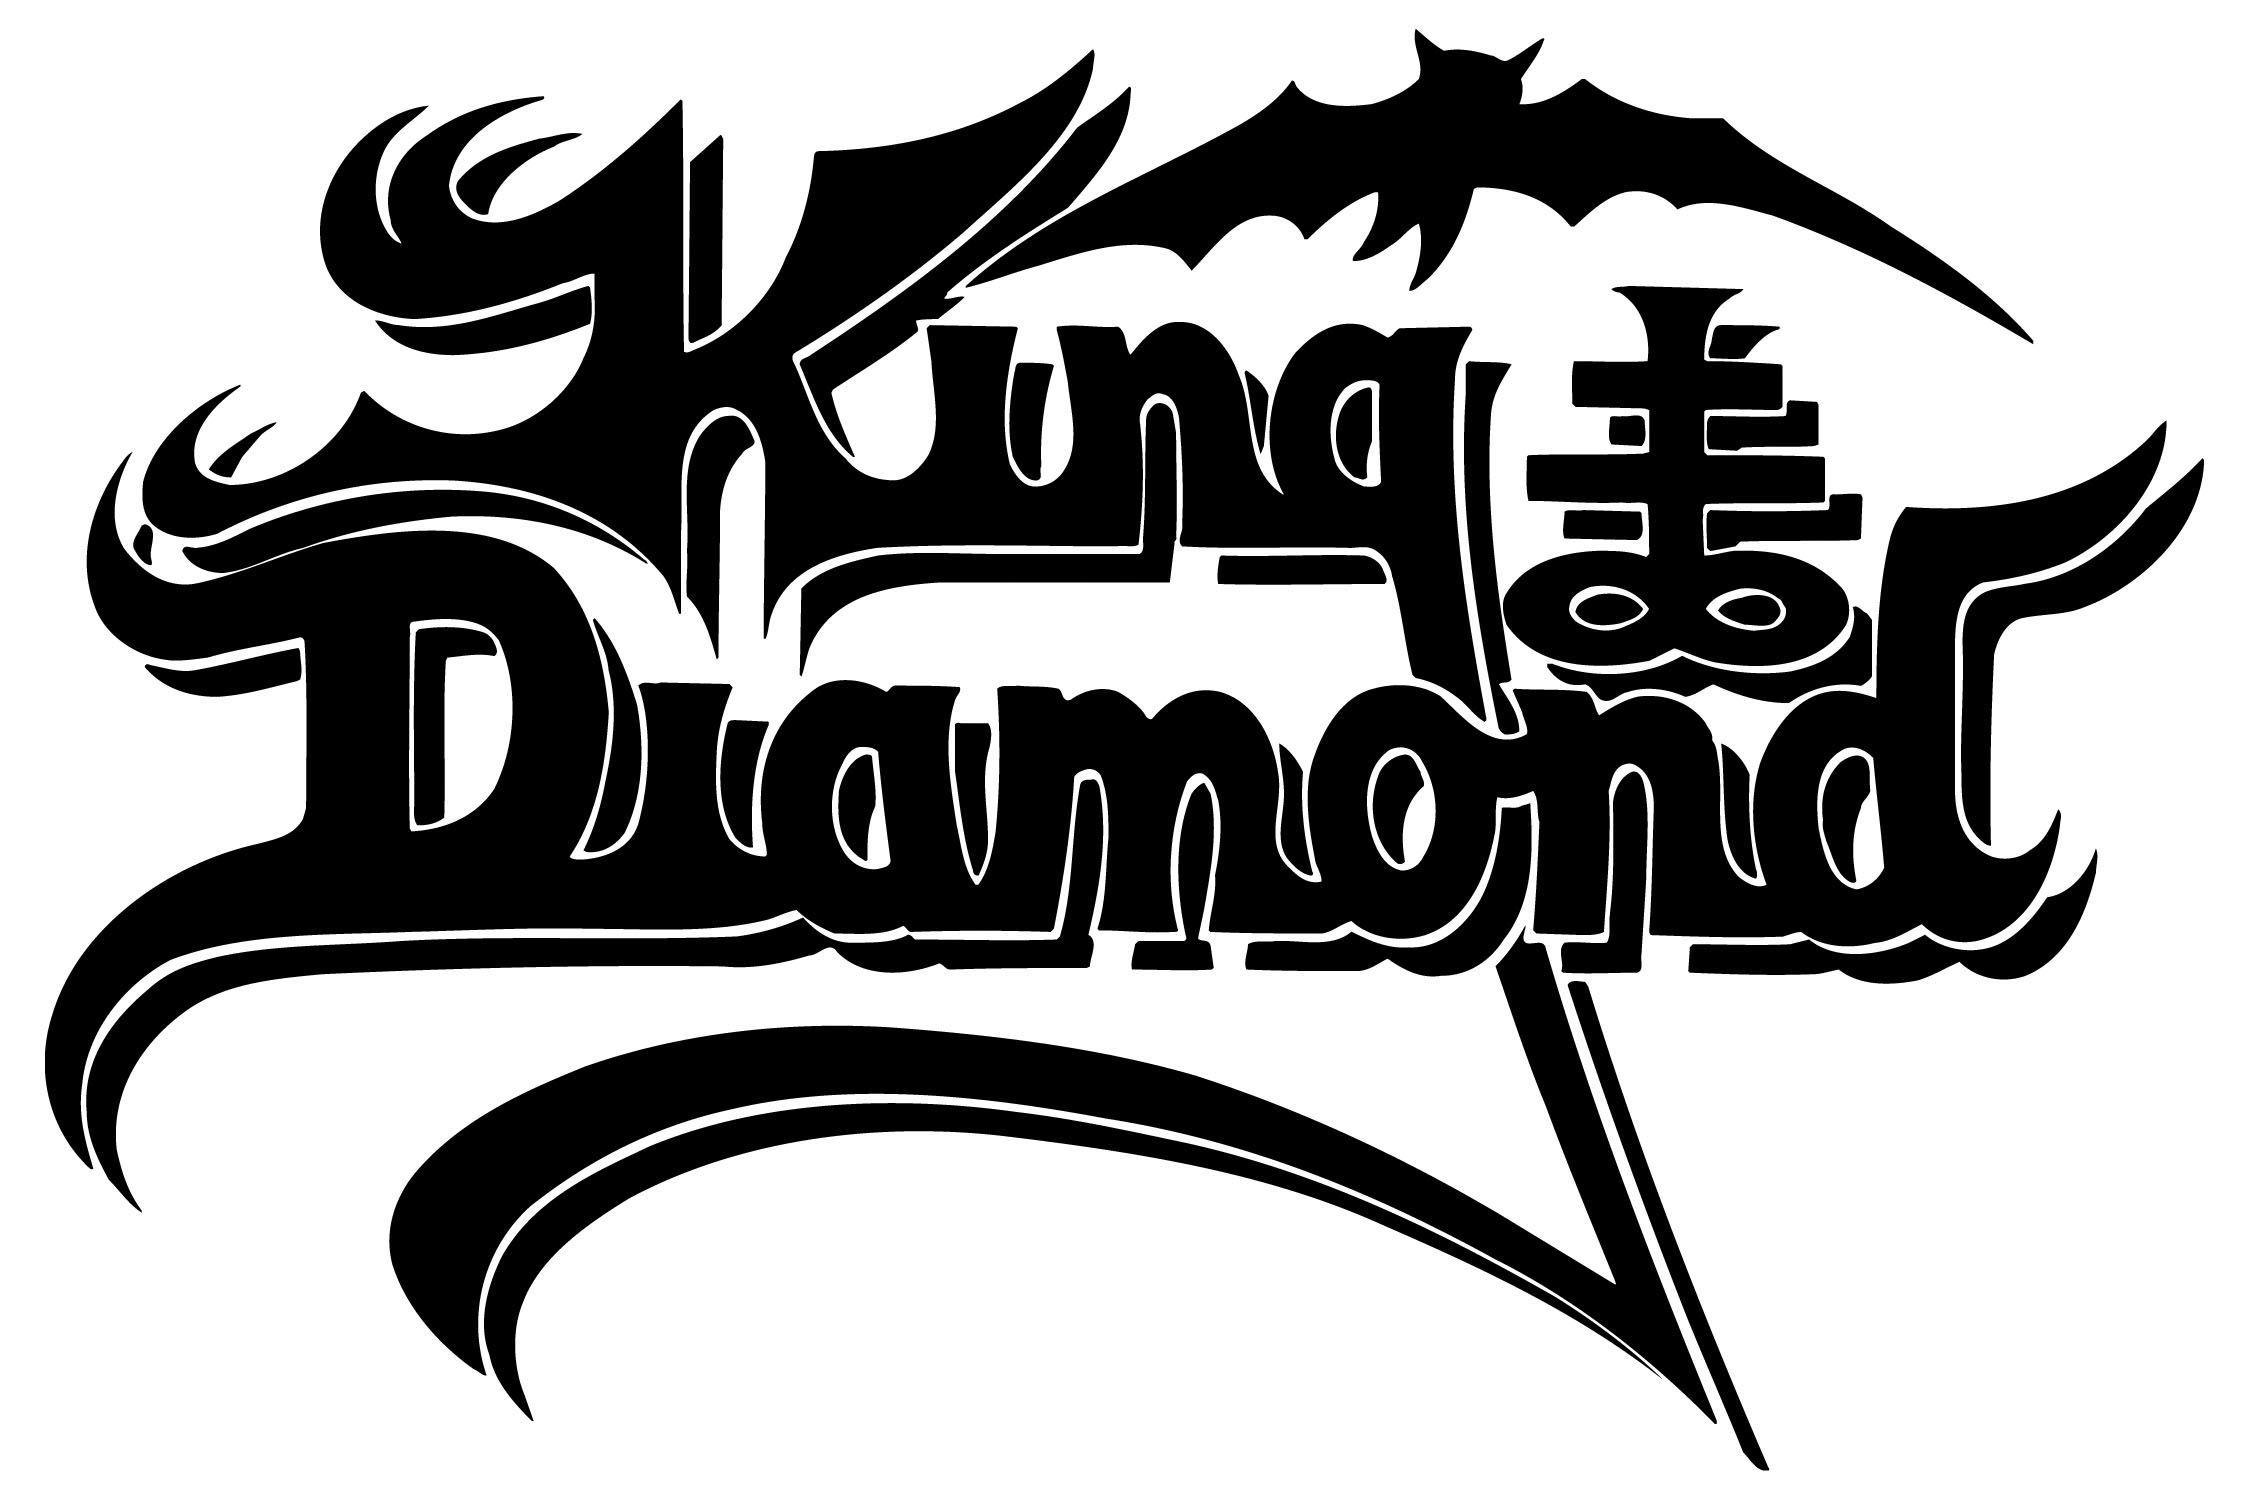 Metal Diamond Logo - KING DIAMOND. King diamond, King, Band logos